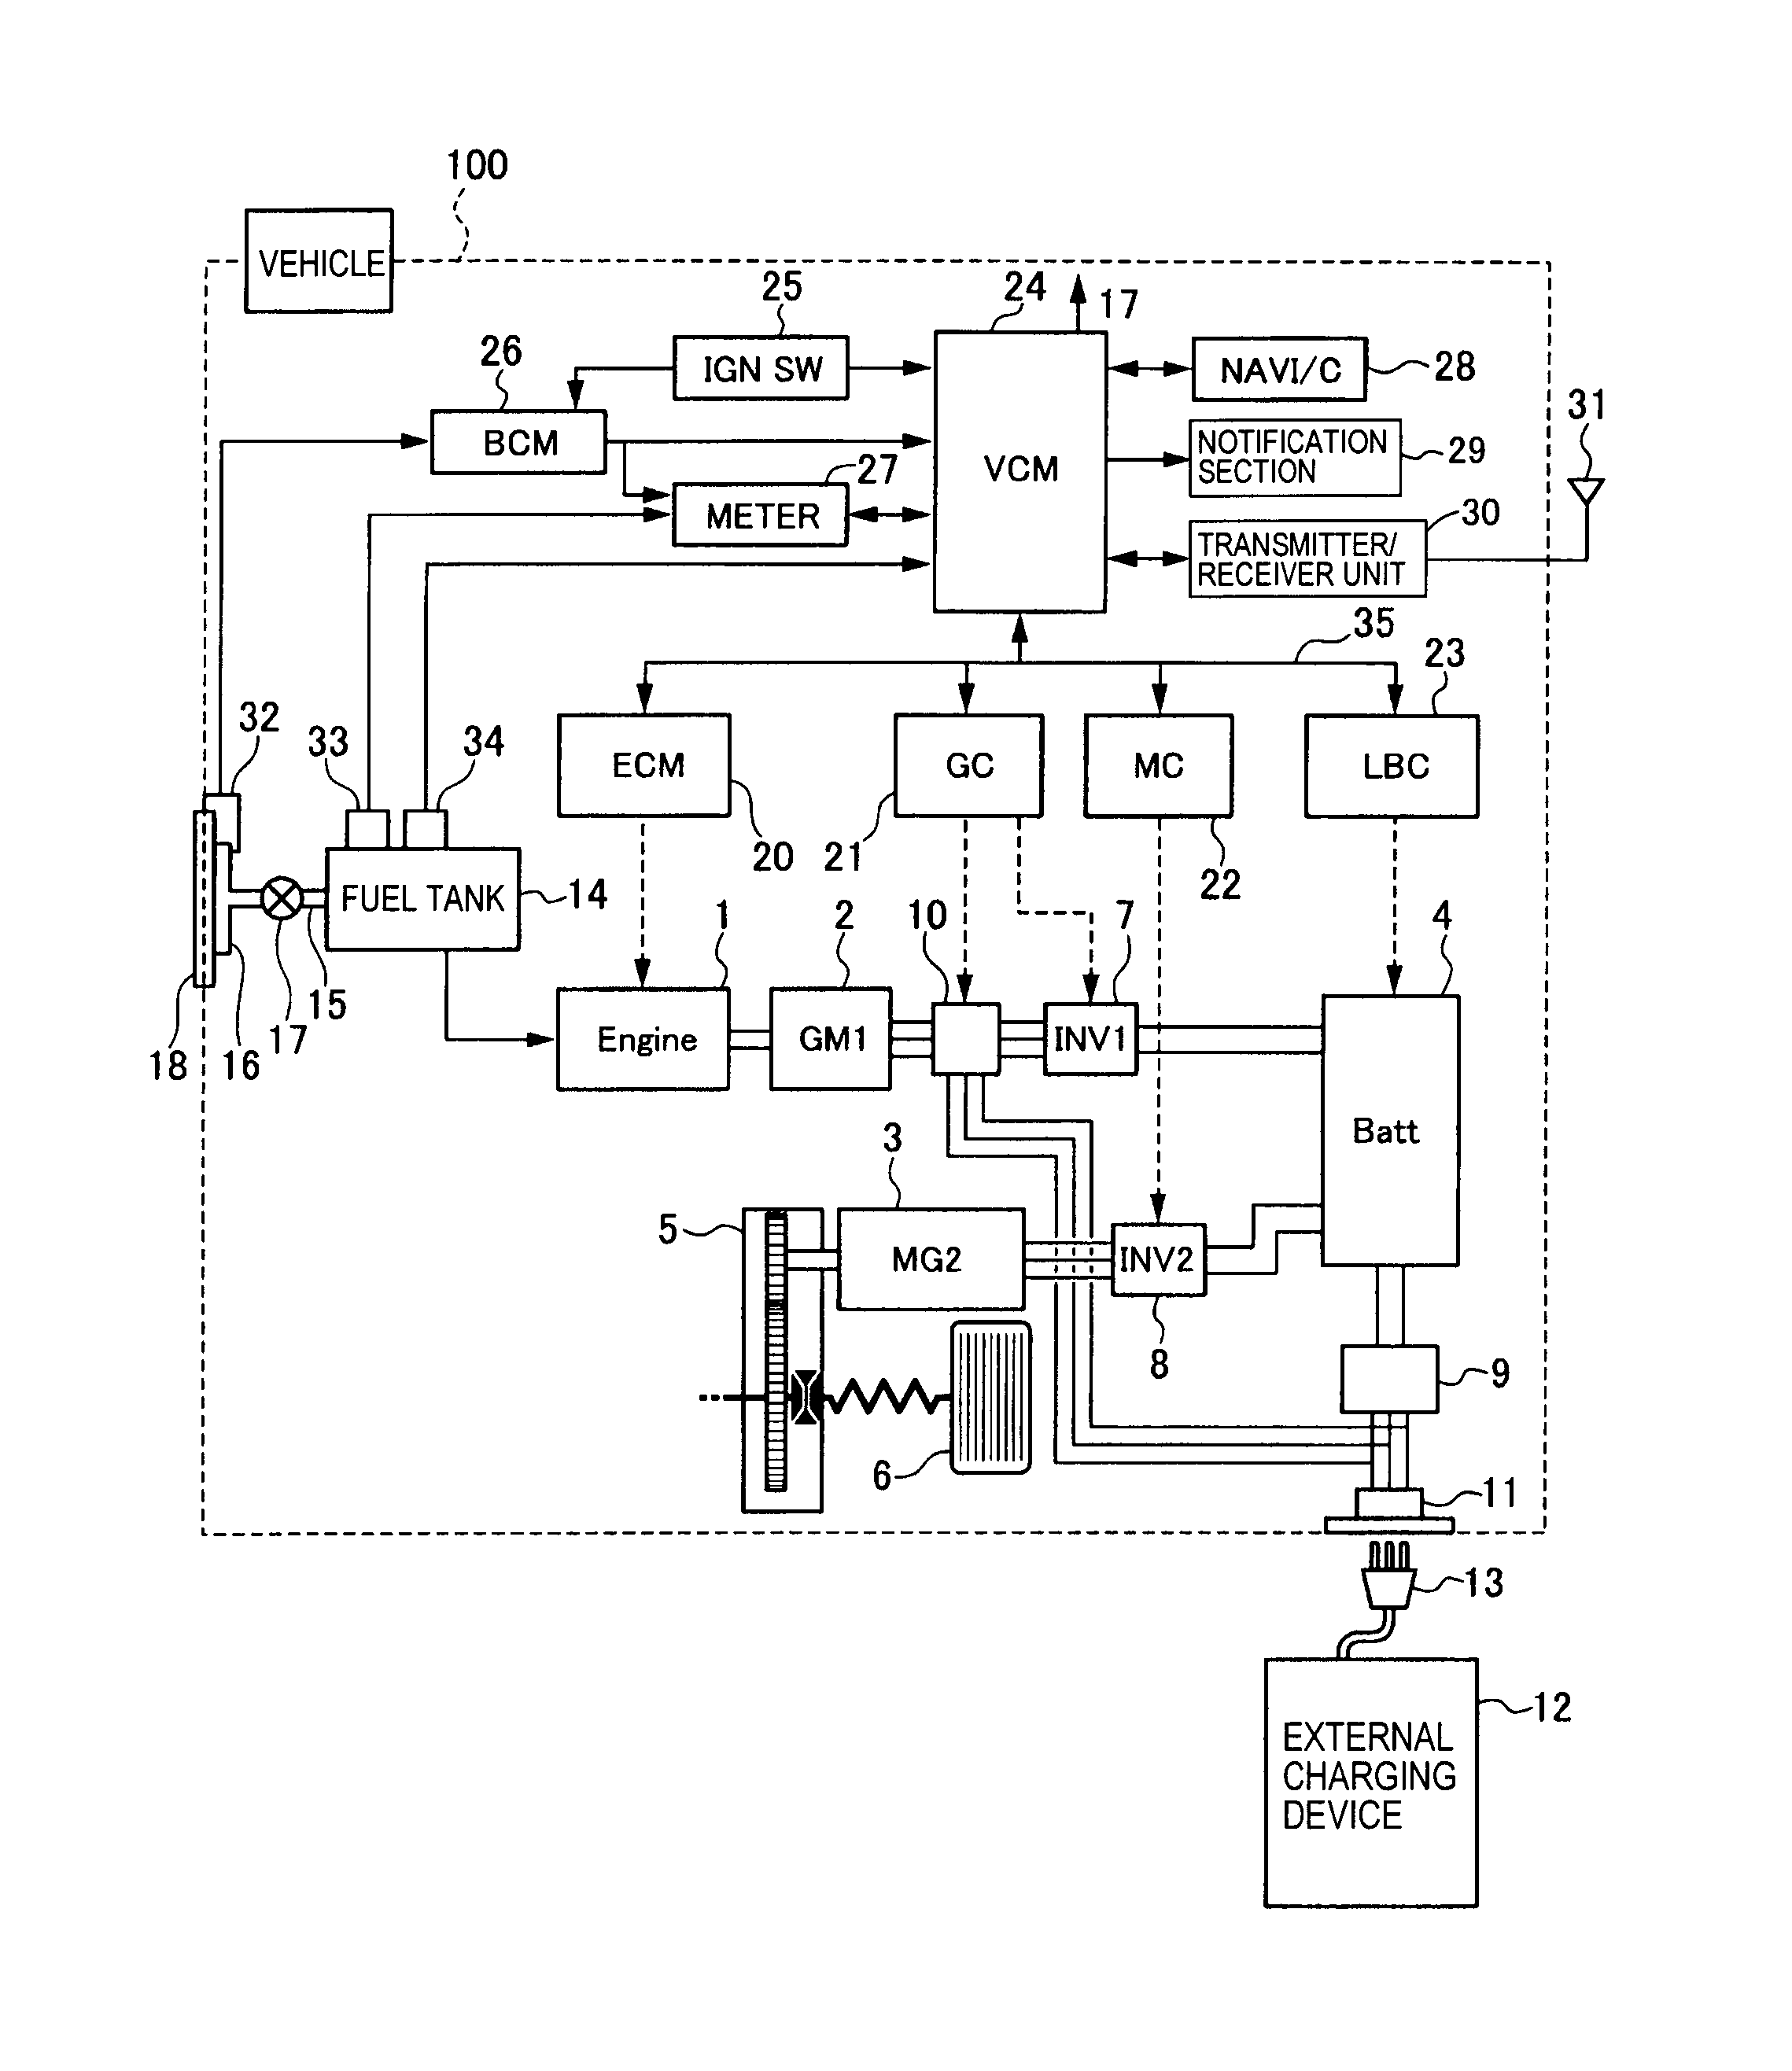 toro lx460 parts diagram